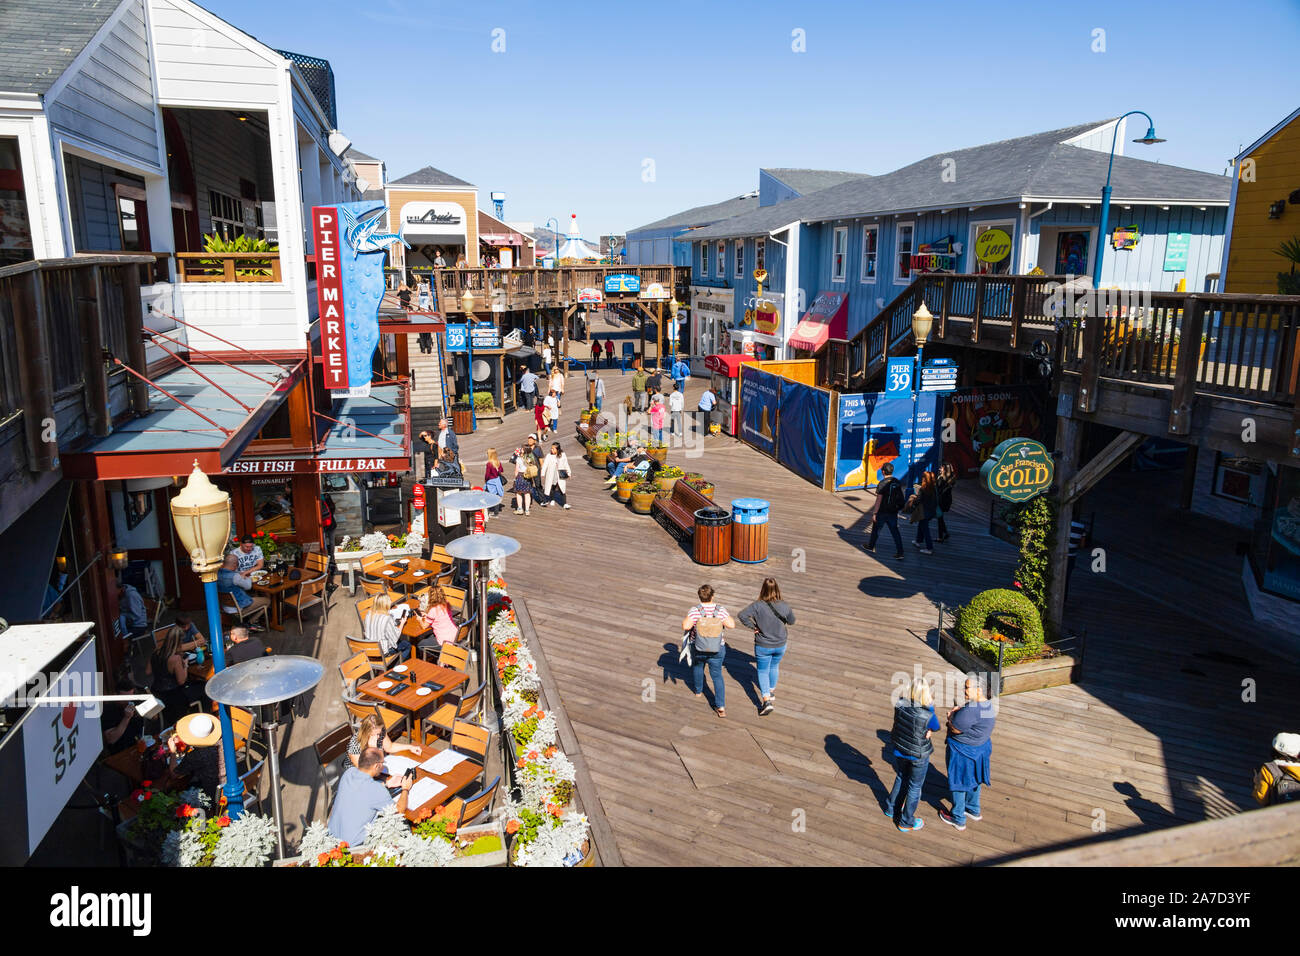 Attraktionen am Pier 39, Fisherman's Wharf, San Francisco, Kalifornien Vereinigte Staaten von Amerika Stockfoto